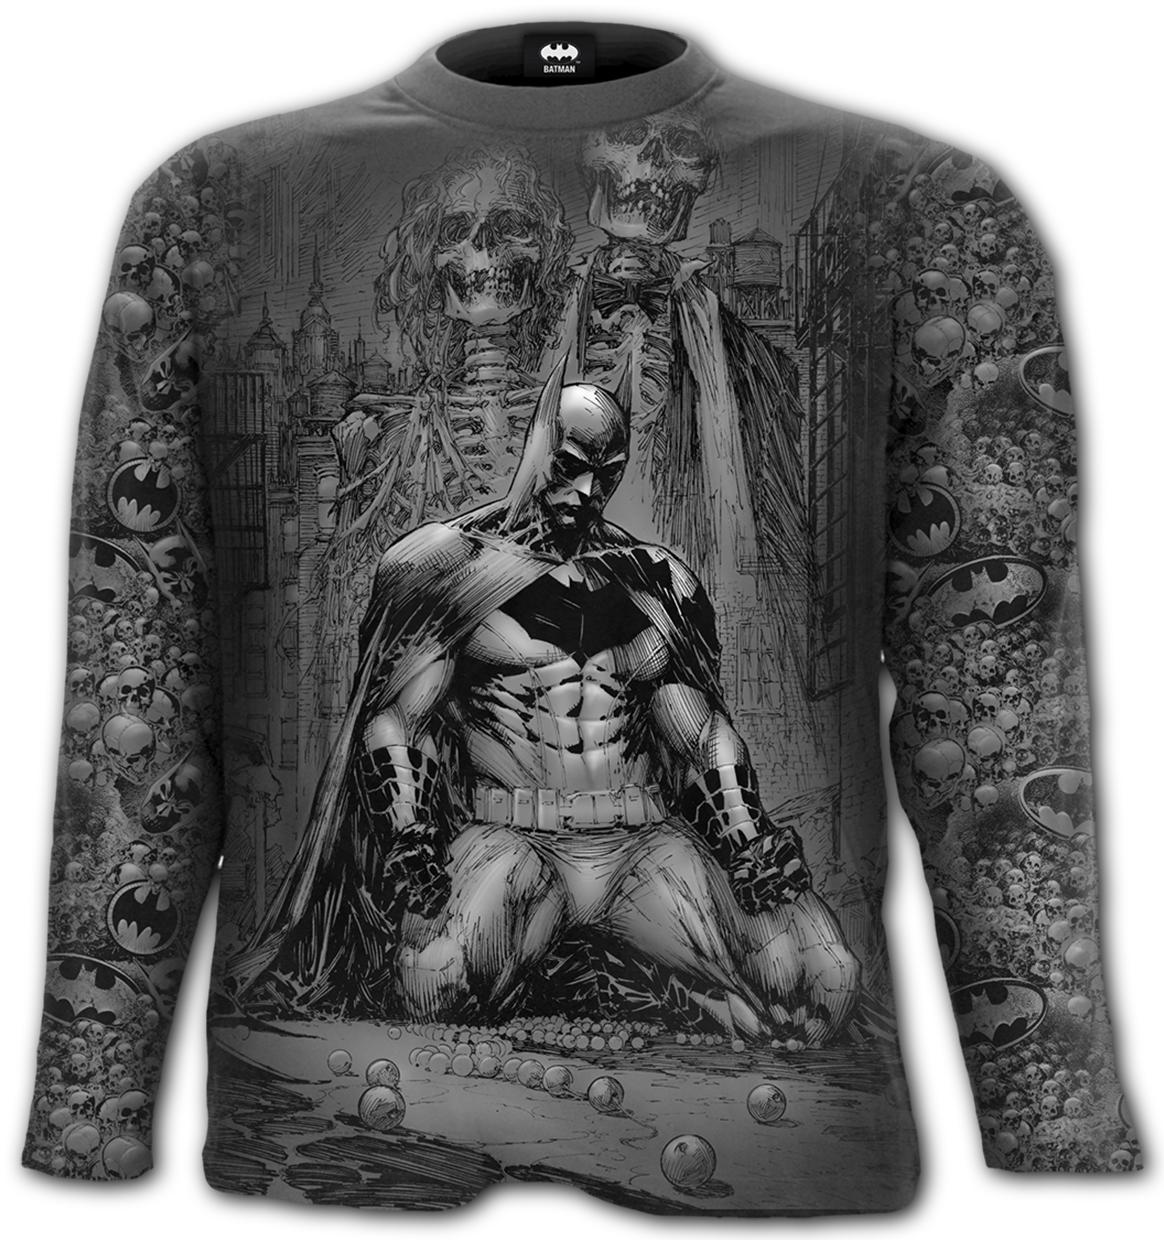 Abbigliamento Spiral: Batman - Vengeance Wrap - Allover Longsleeve T-Shirt Black Uomo L NUOVO SIGILLATO SUBITO DISPONIBILE